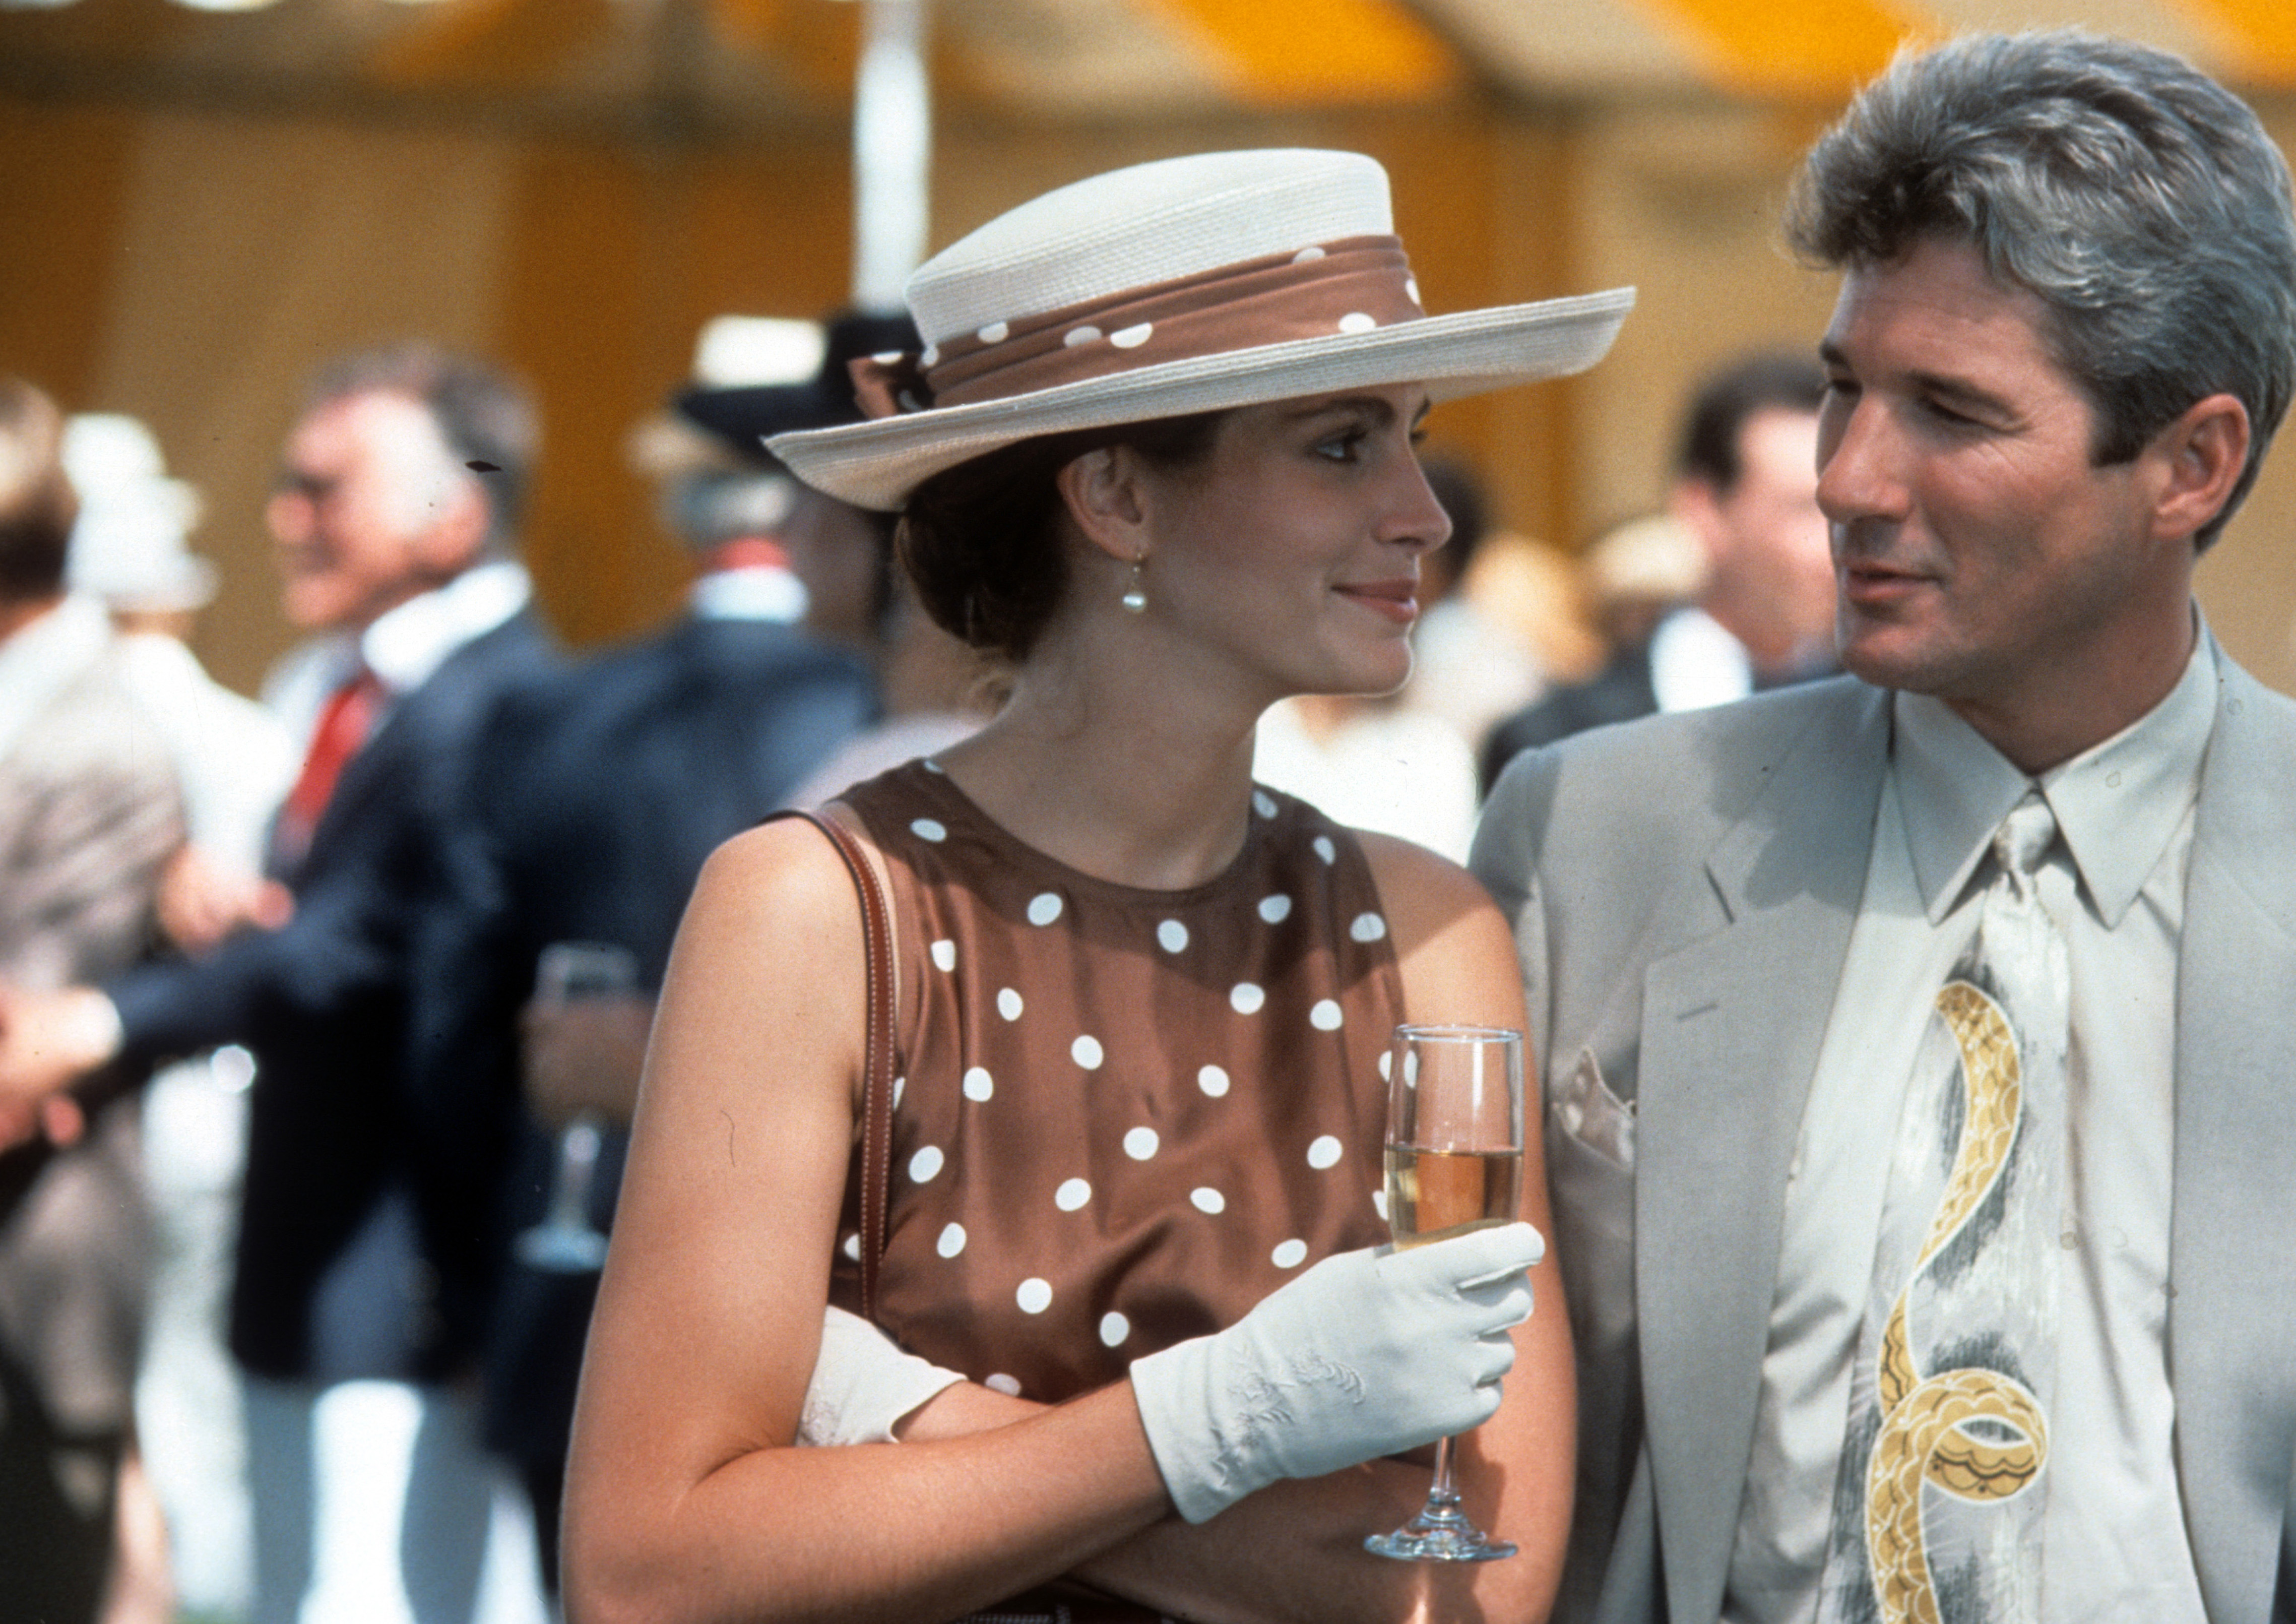 Julia Roberts et Richard Gere dans une scène du film "Pretty Woman", vers 1990. | Source : Getty Images